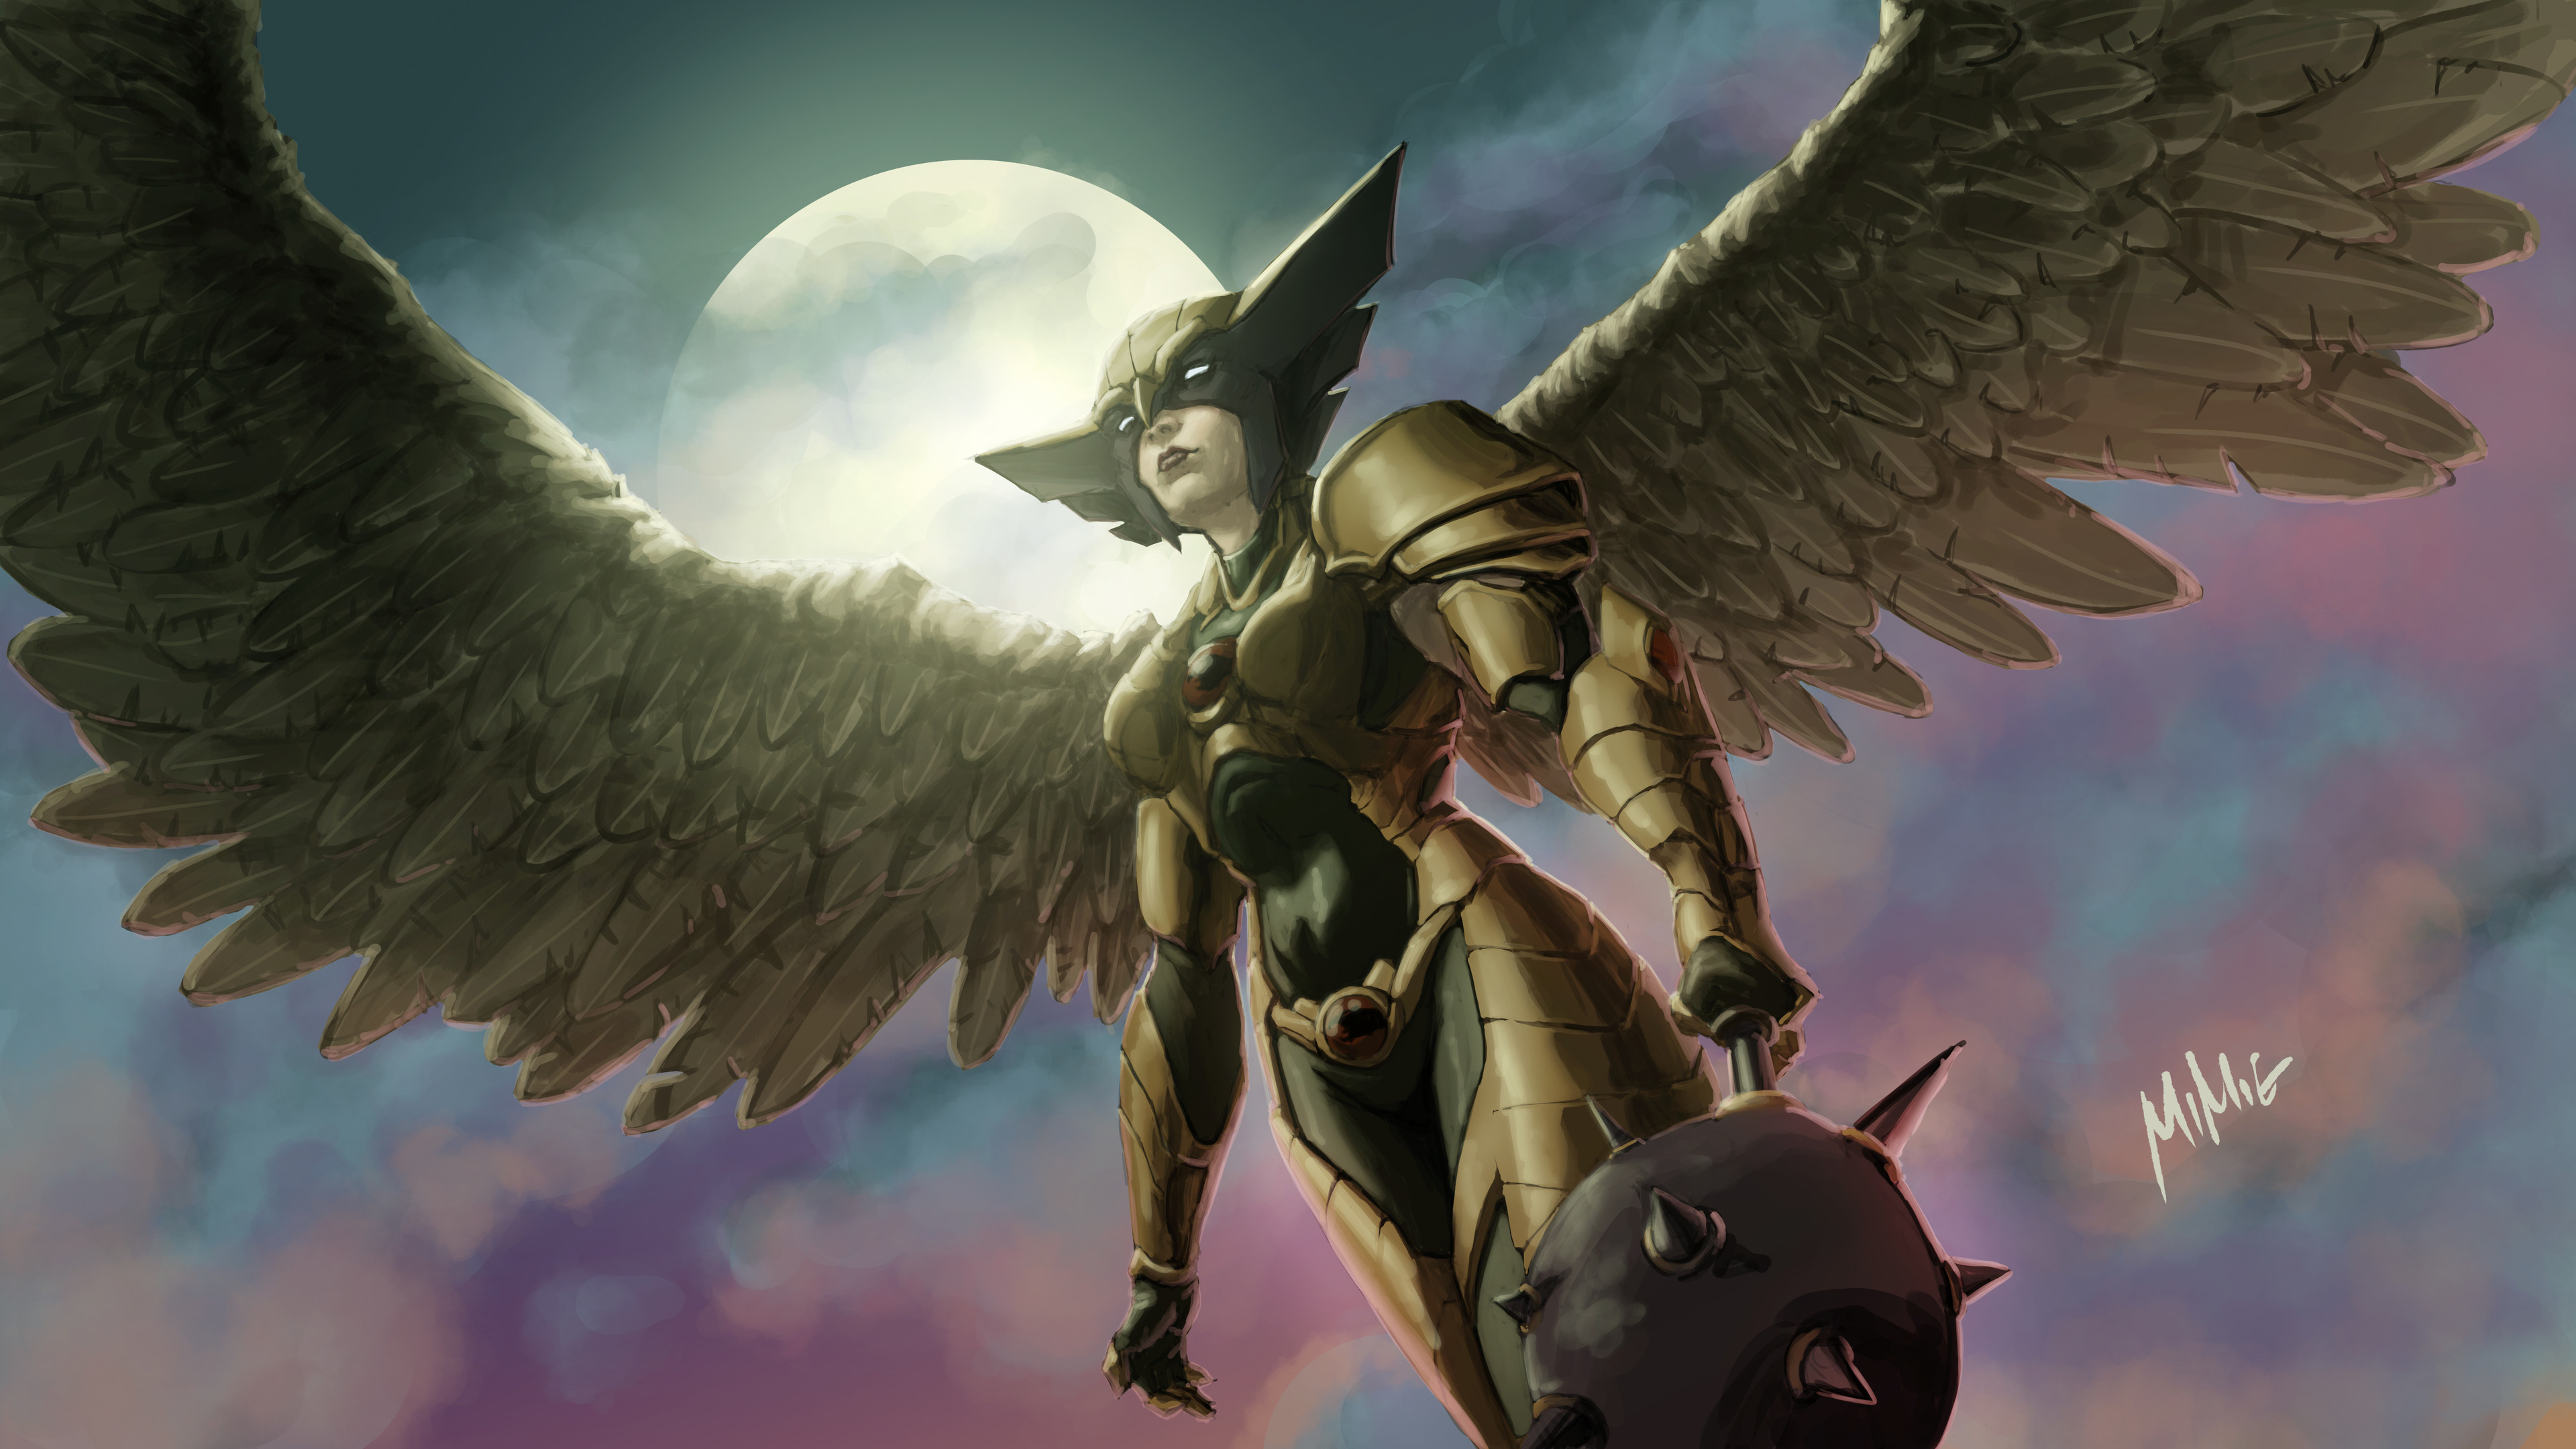 Hawkgirl 4k Ultra HD Wallpaper by Miguel Blanco